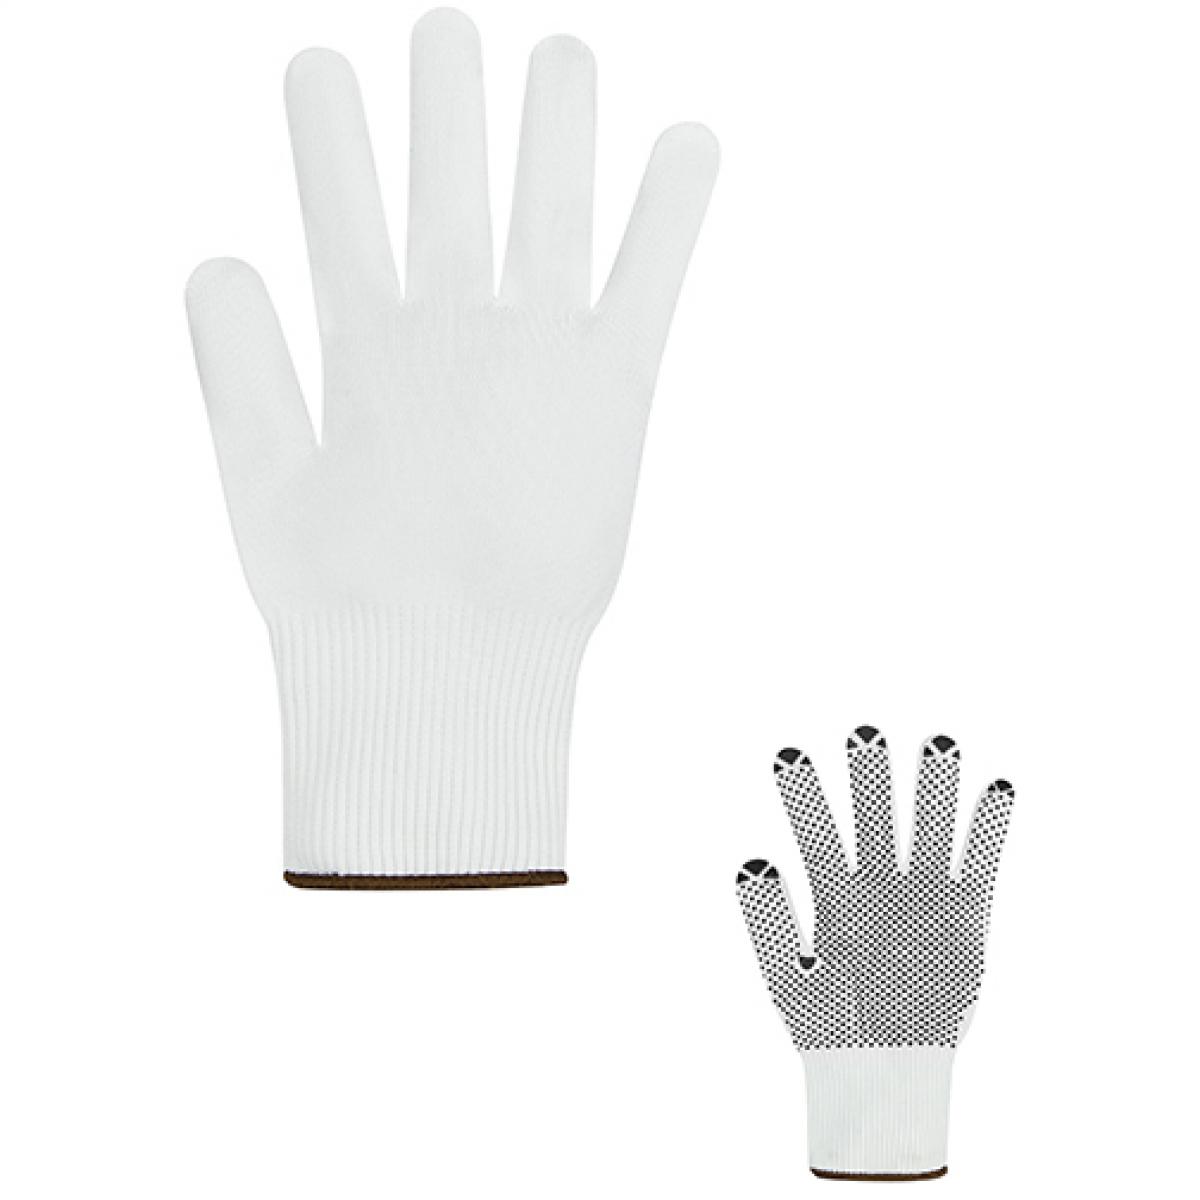 Hersteller: Korntex Herstellernummer: HSFS Artikelbezeichnung: Fine Knit Gloves Konya Arbeitshandschuh Farbe: White/Black